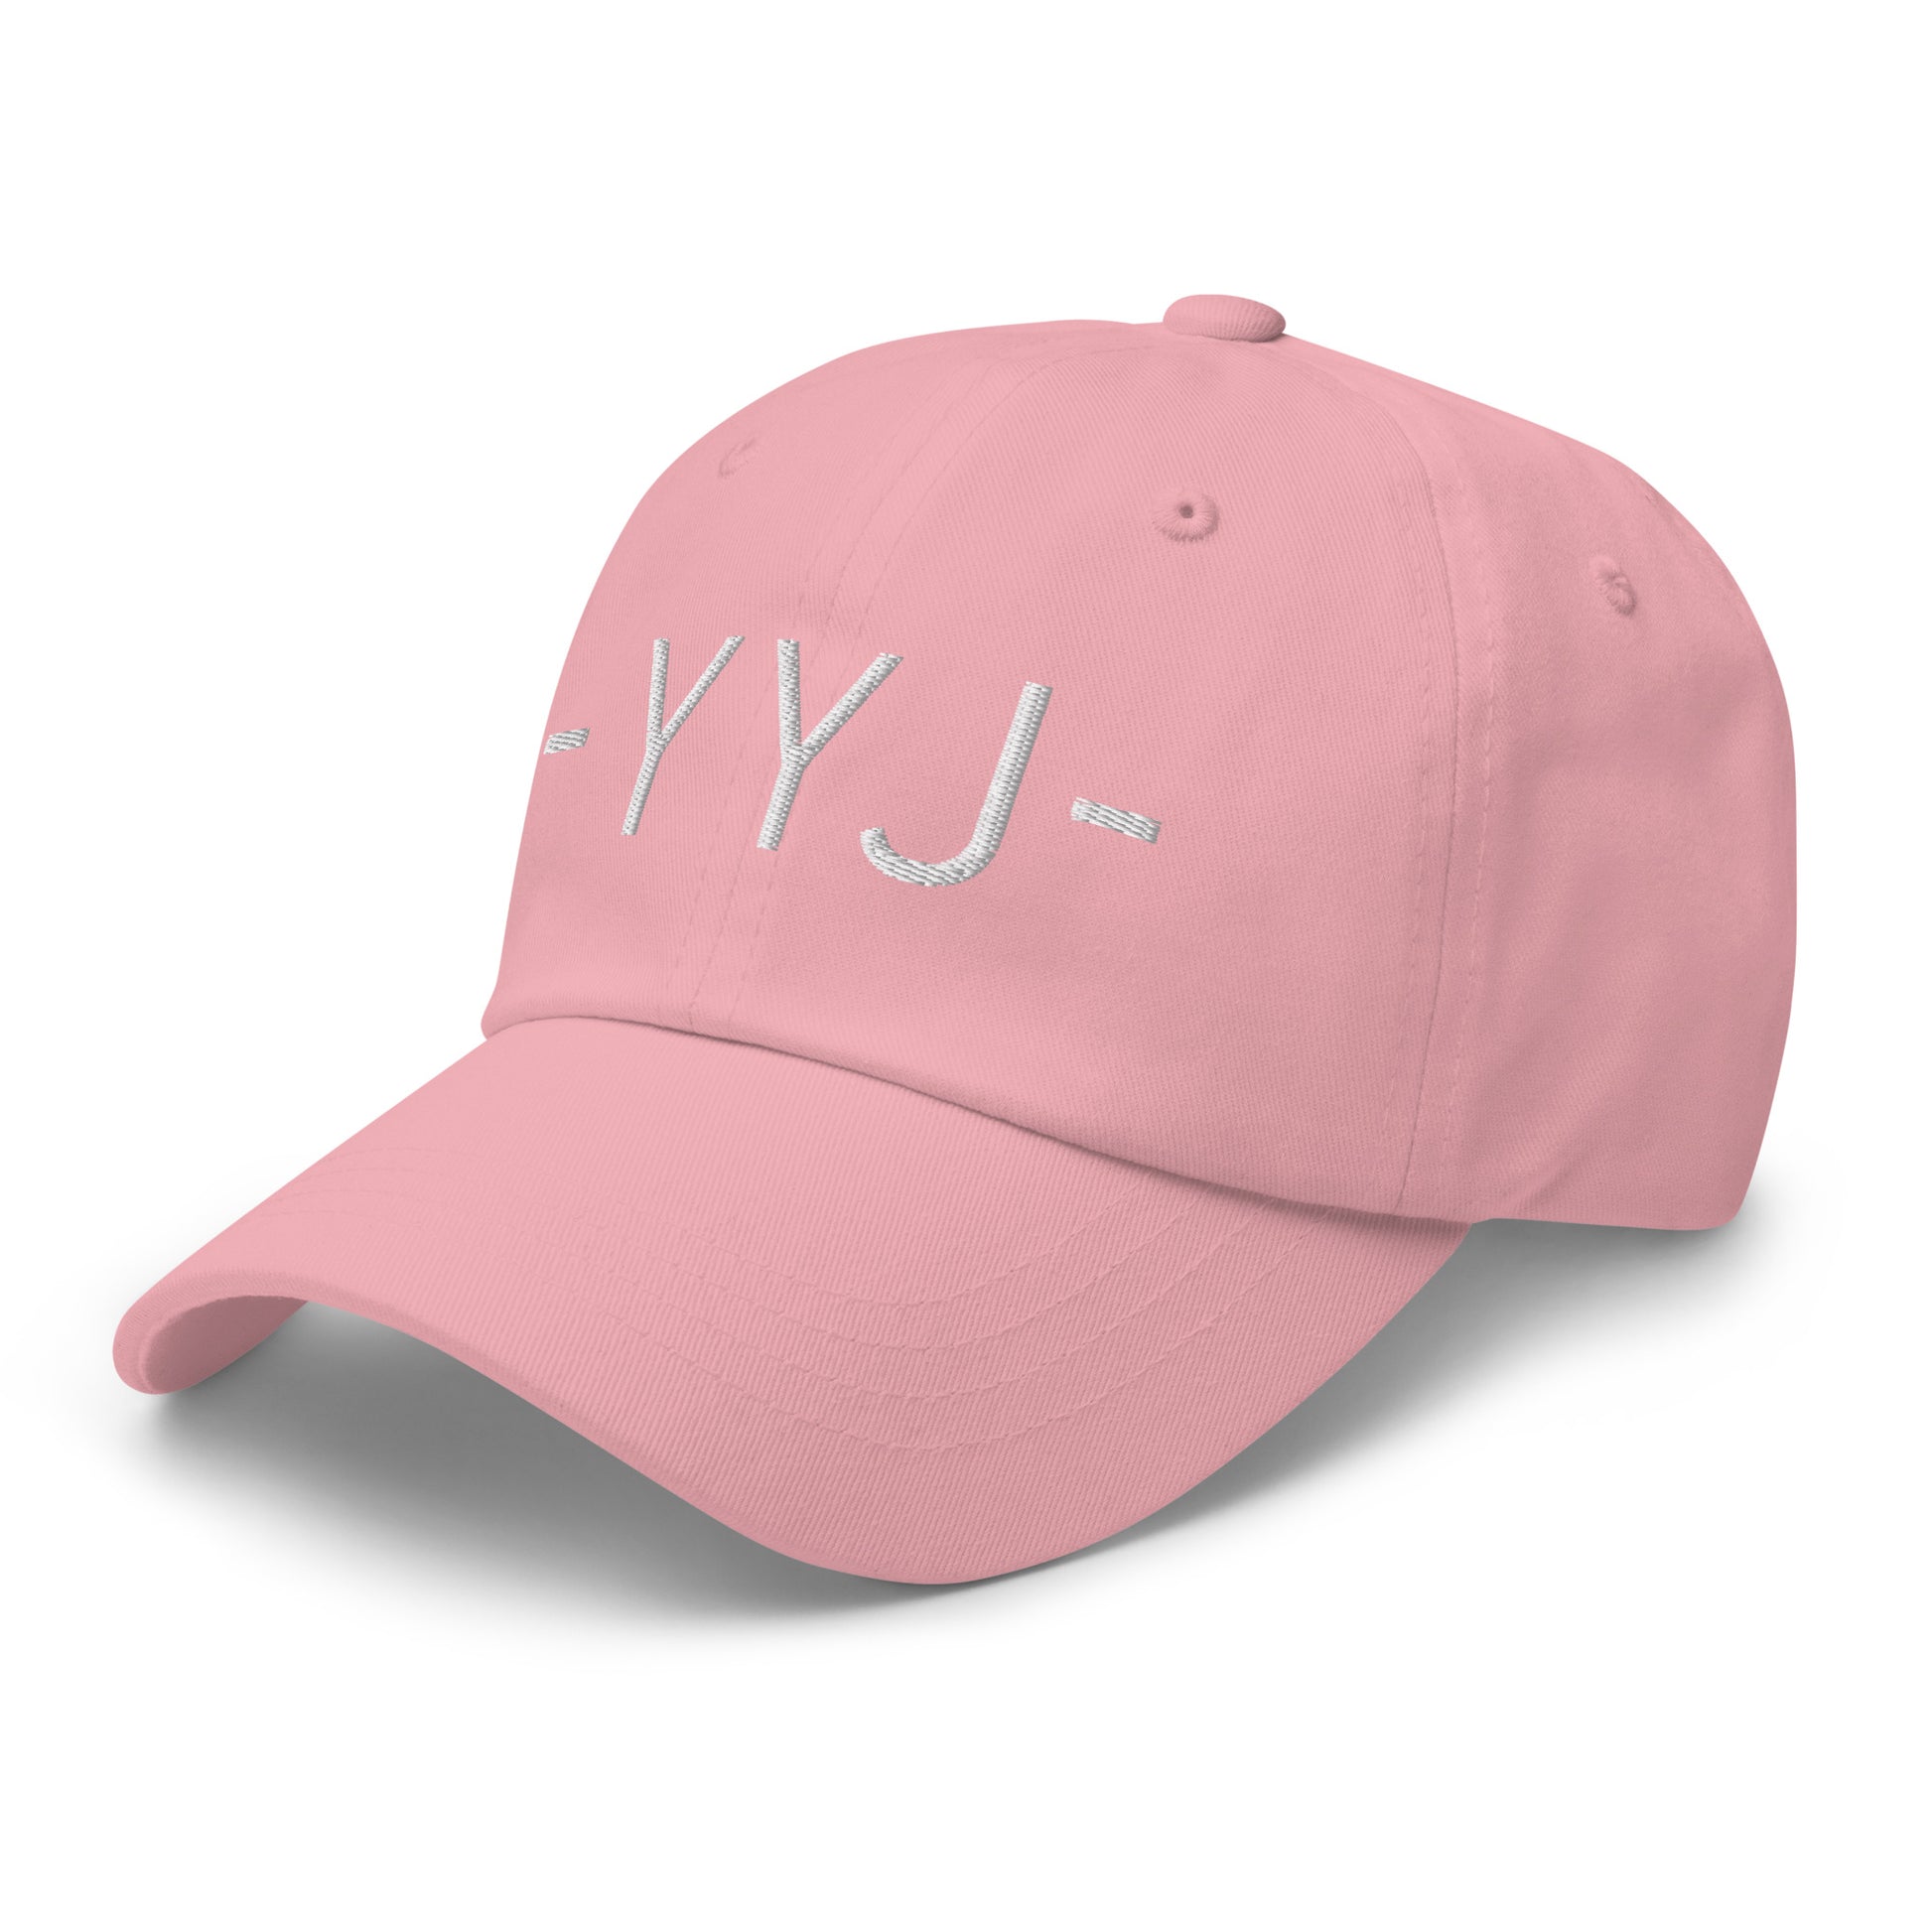 Souvenir Baseball Cap - White • YYJ Victoria • YHM Designs - Image 26